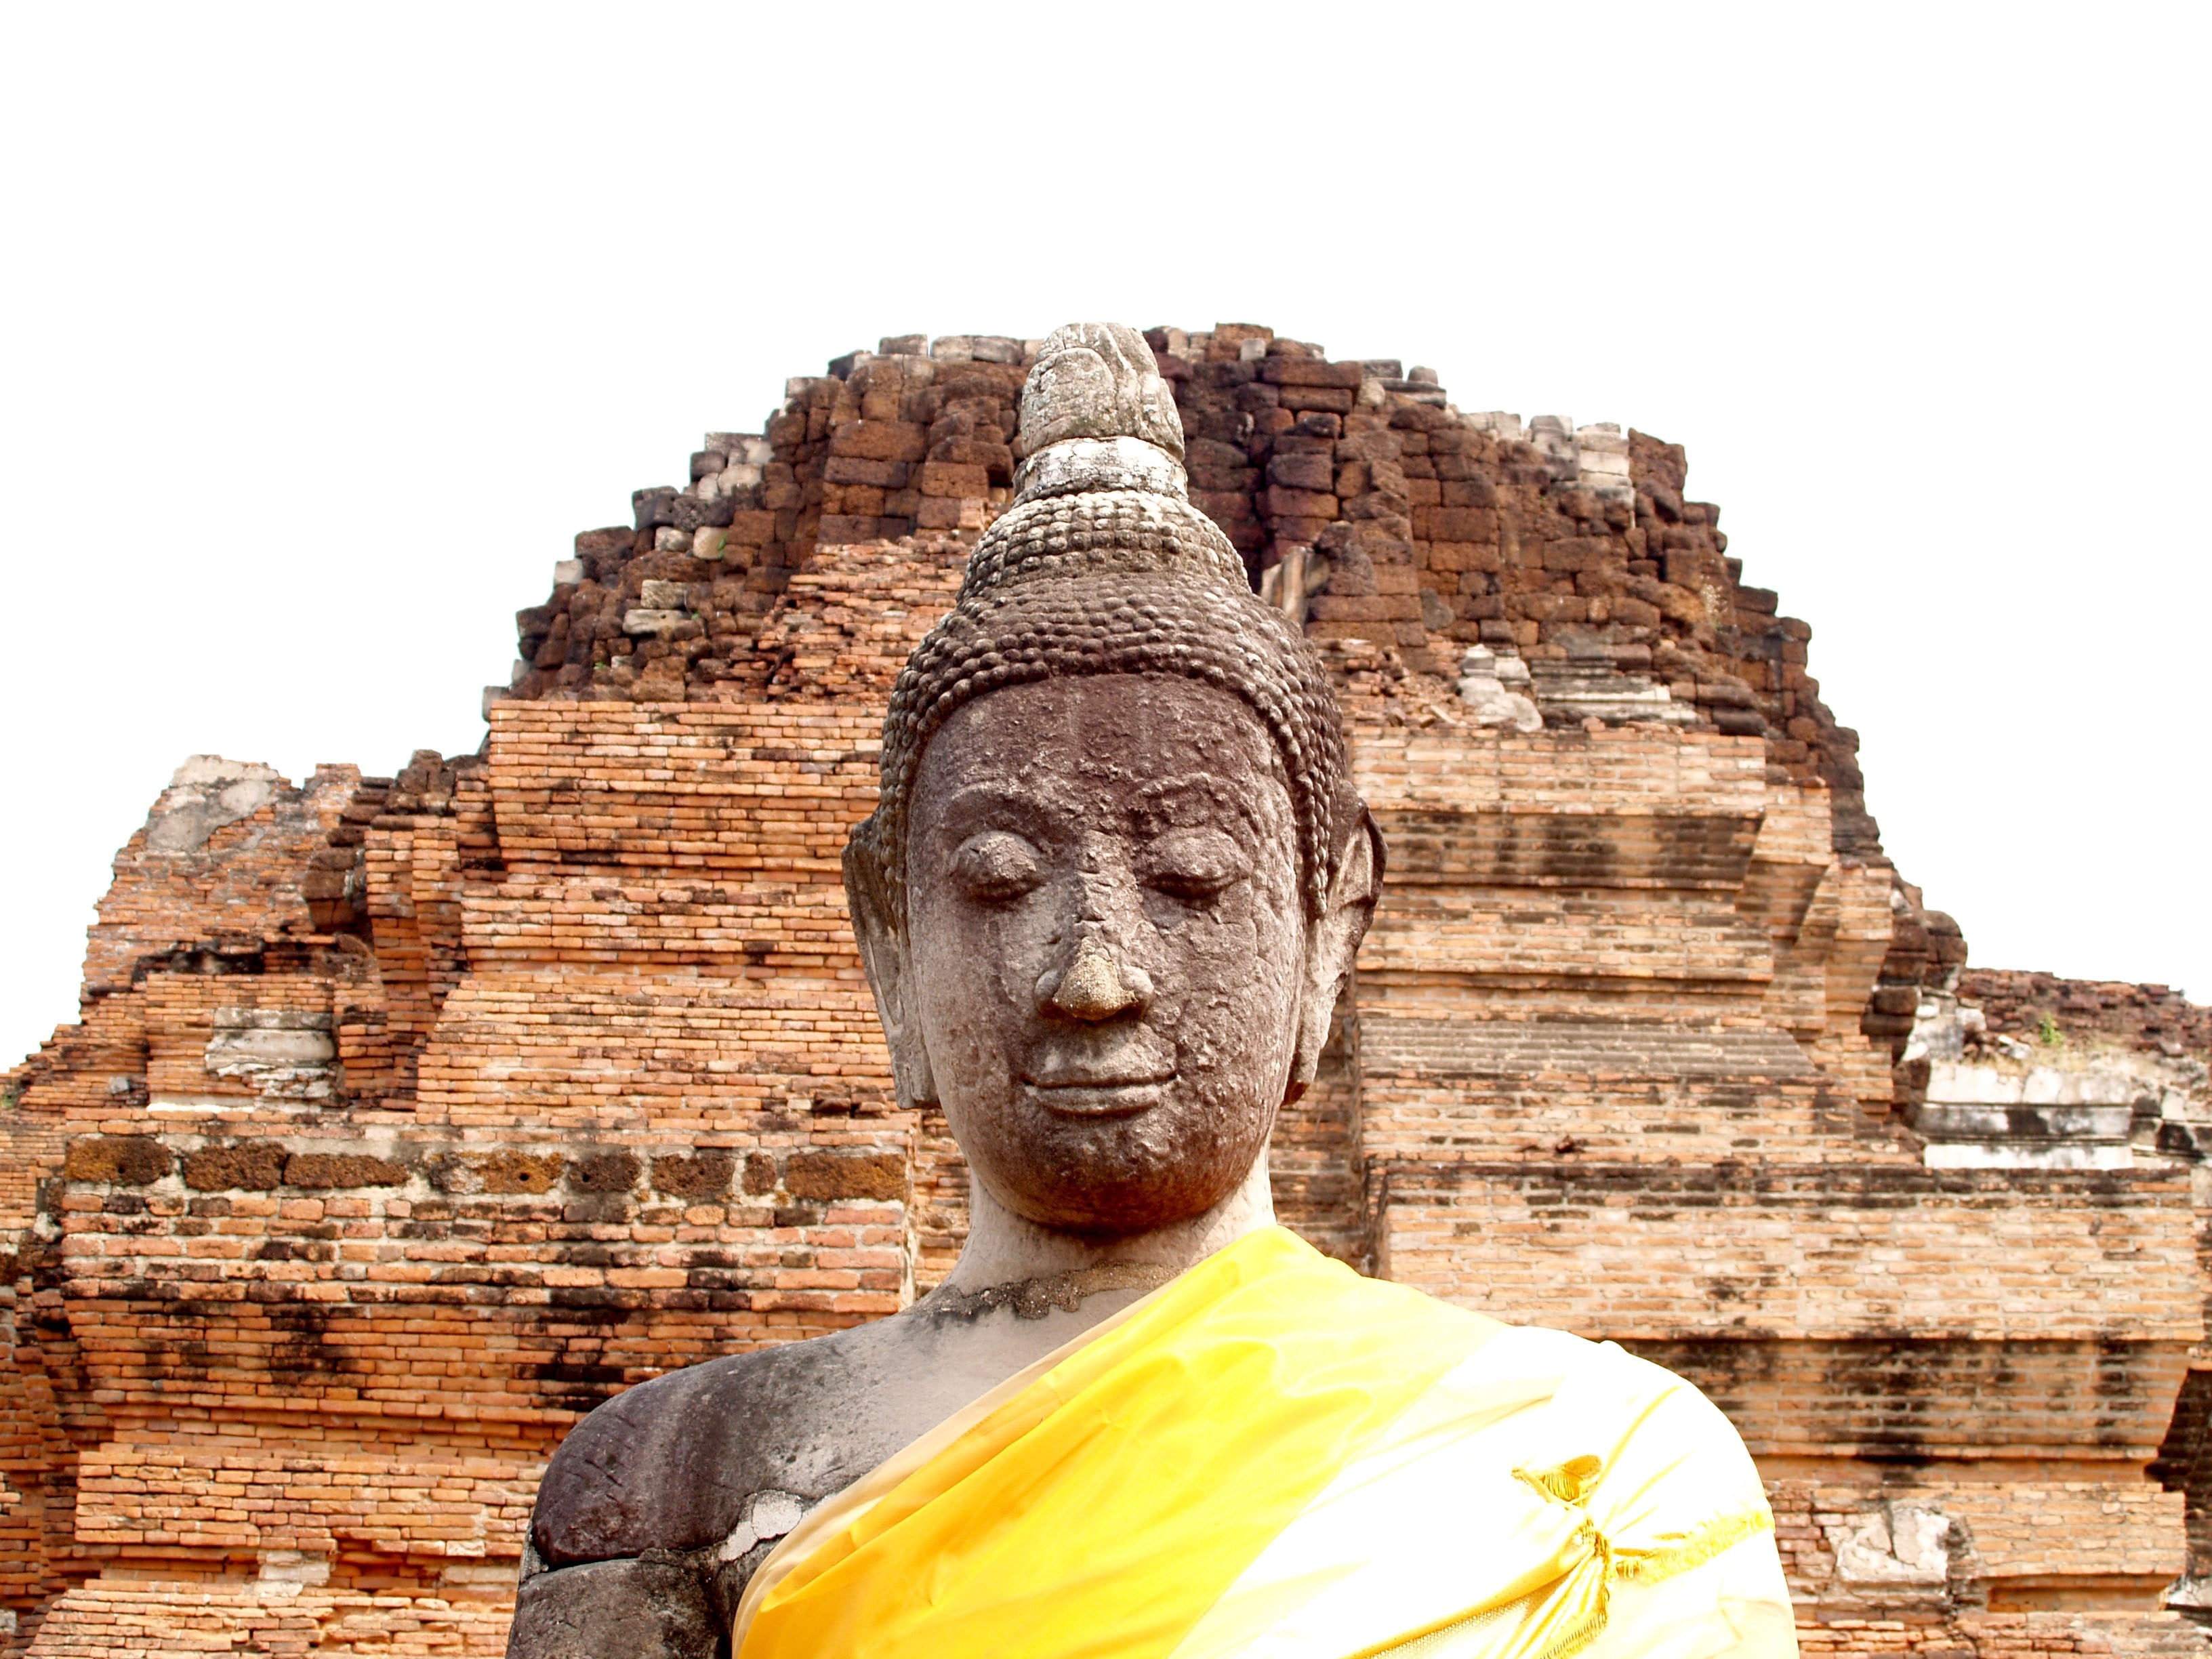 gautama buddha statue